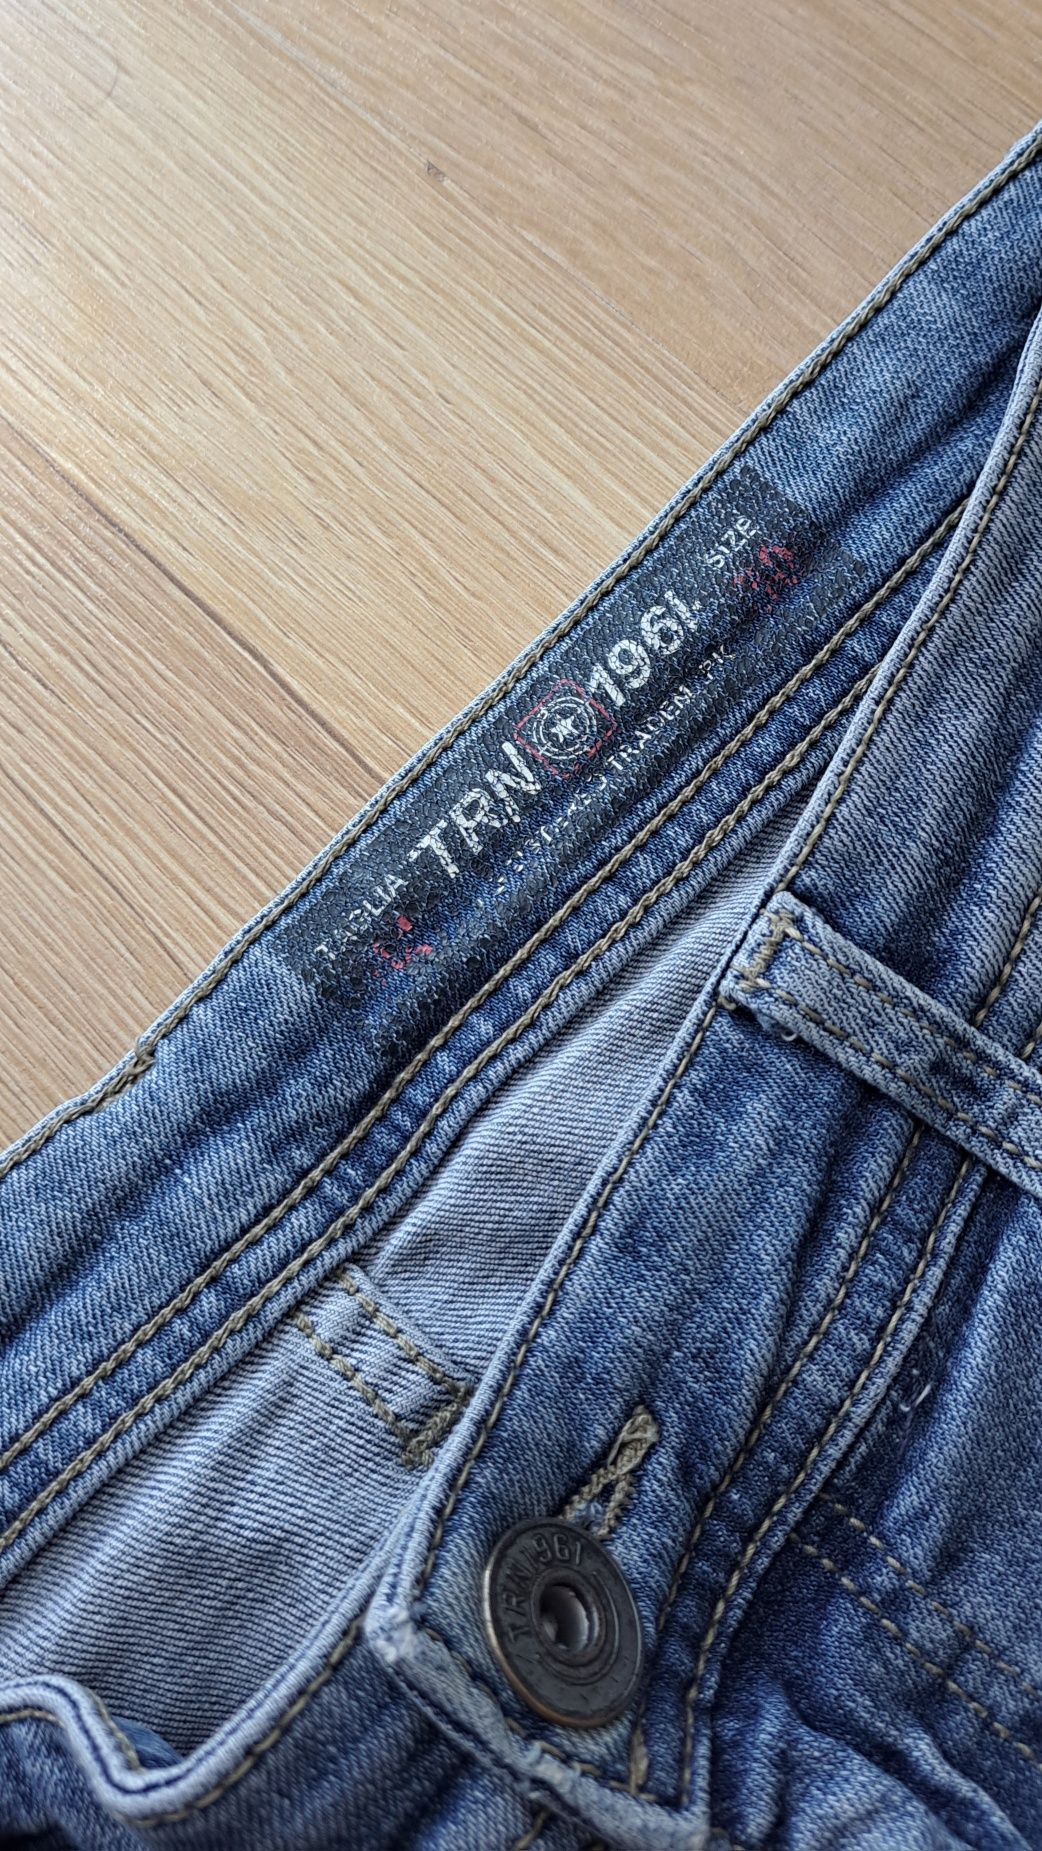 Jeansowe spodnie męskie
TRN rozm. 30 (wypada na mniejsze)